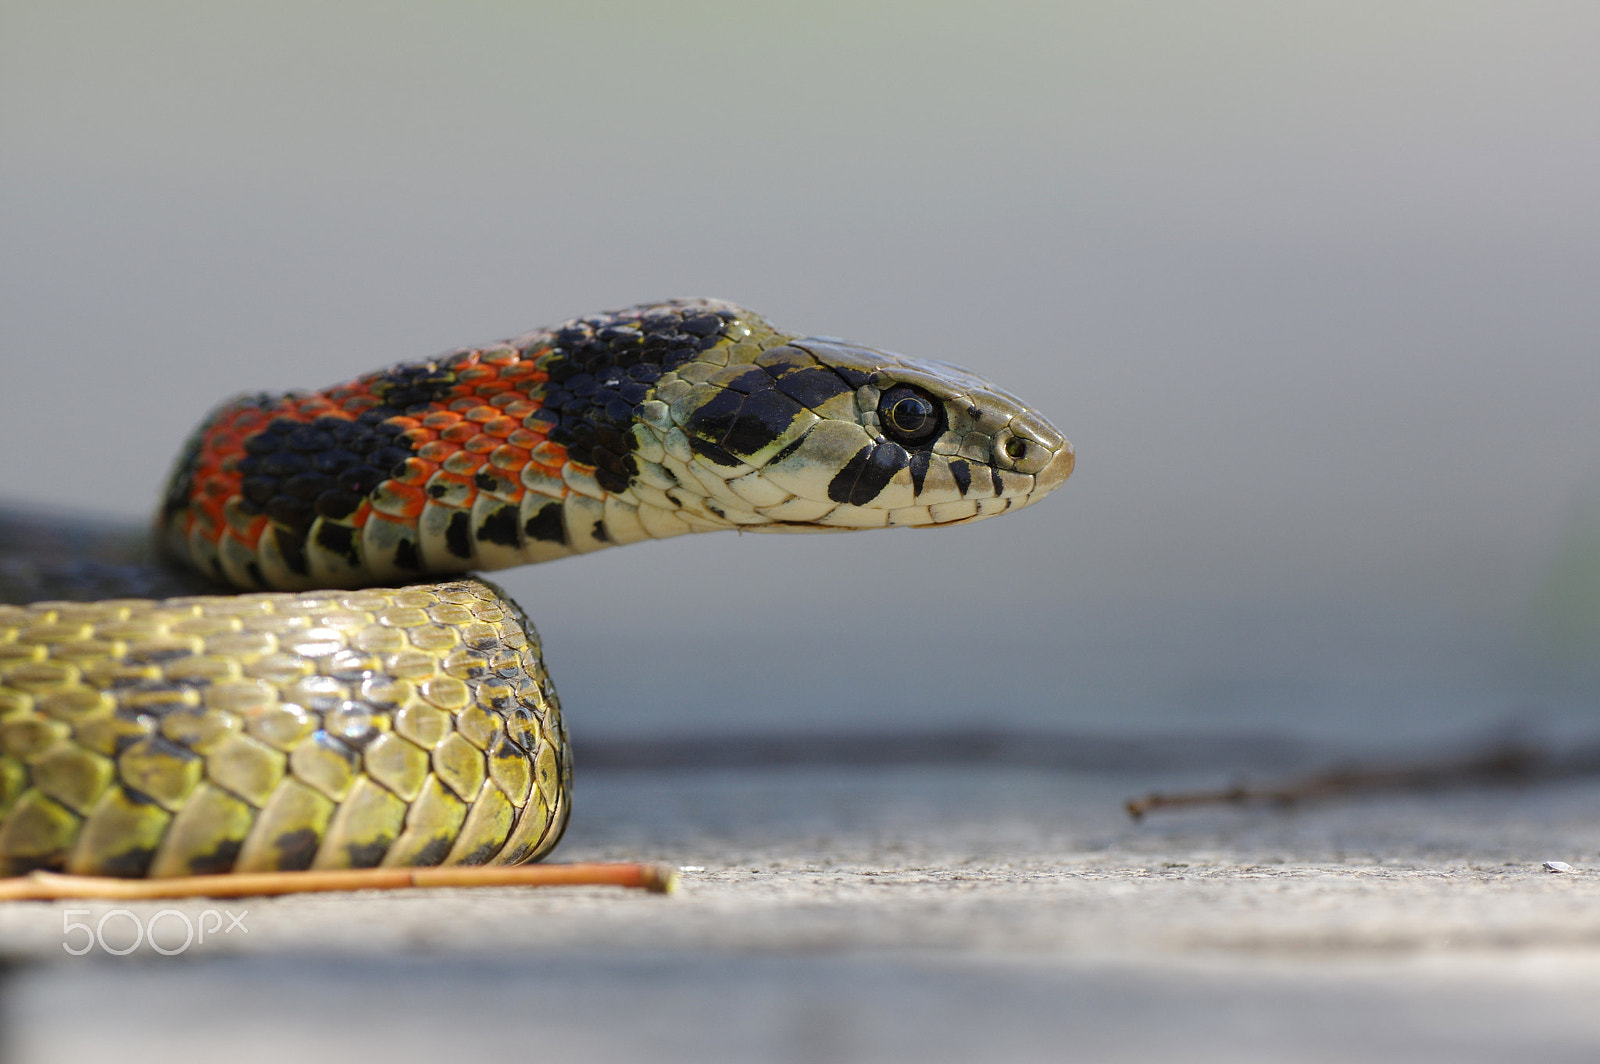 Pentax K-3 II sample photo. Tiger snake / tigernatter / rhabdophis tigrinus photography